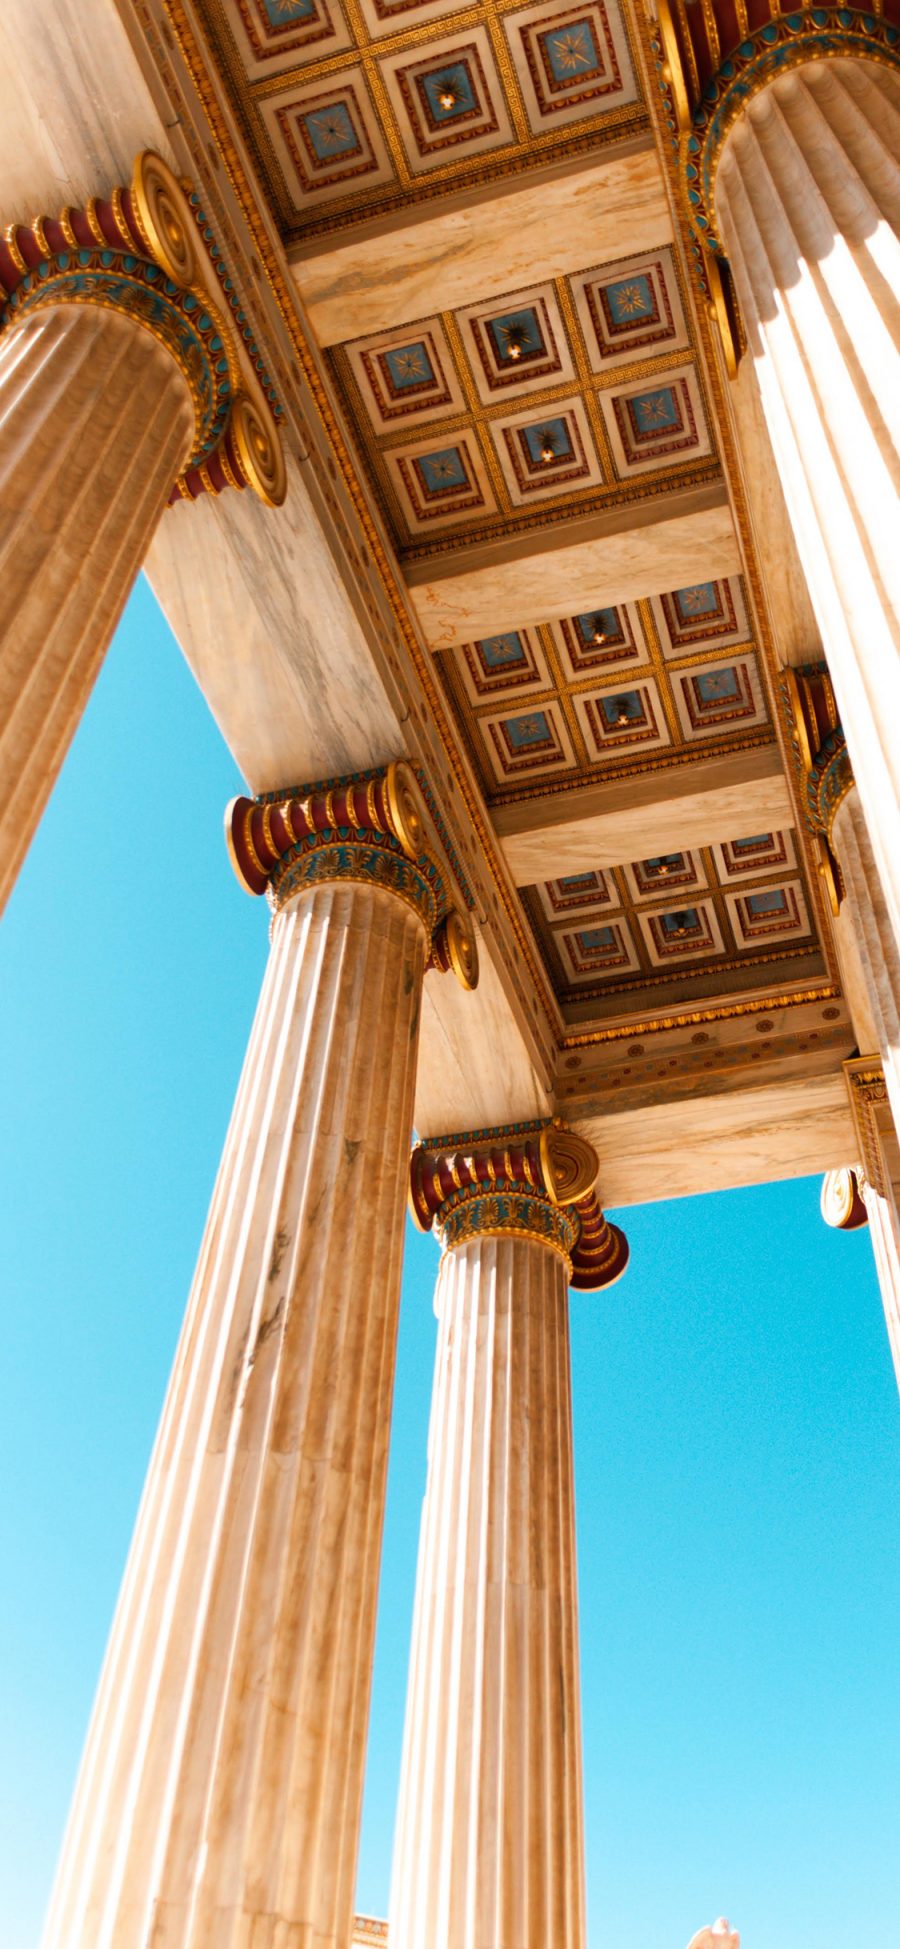 [2436×1125]建筑 罗马柱 雅典 柱子 架构 苹果手机壁纸图片